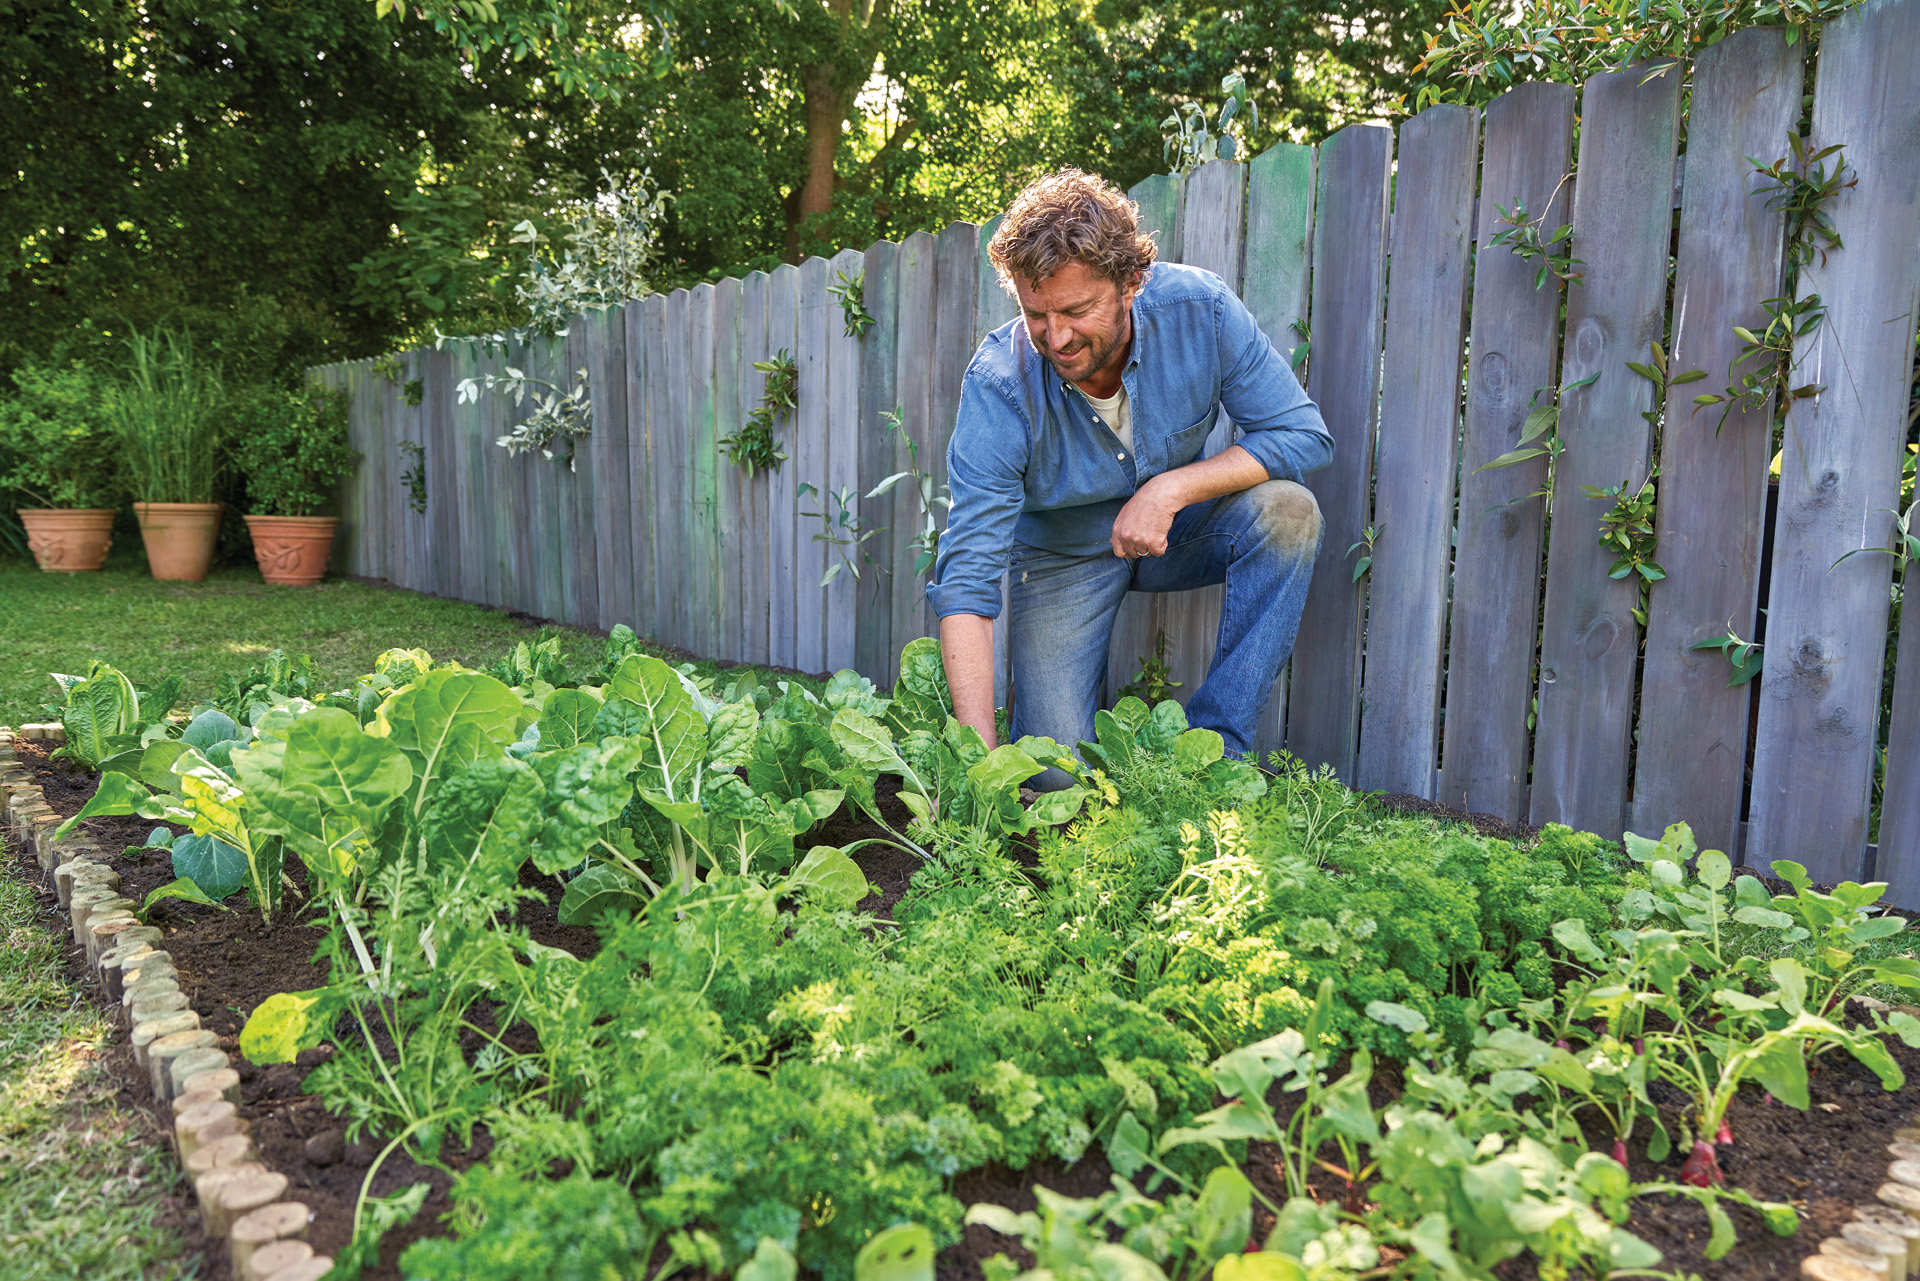 Un hombre de cuclillas en un abundante jardín de hortalizas en casa junto a una valla de madera.